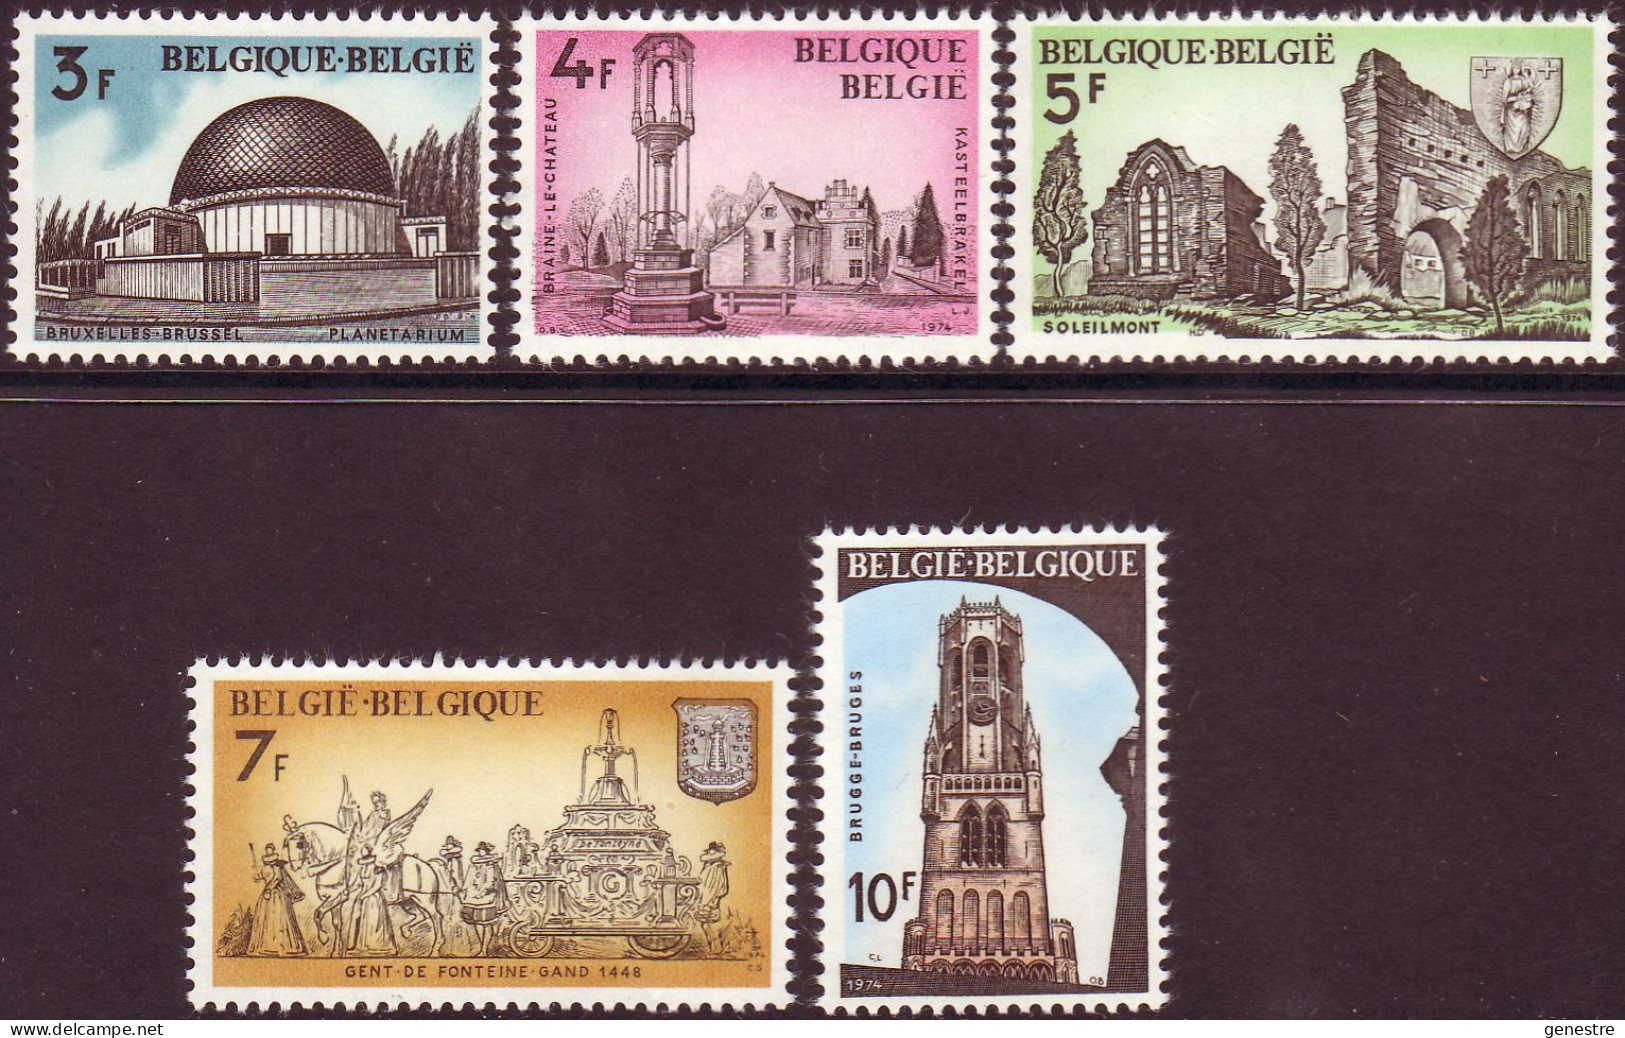 Belgique - 1974 - COB 1718 à 1722 ** (MNH) - Neufs